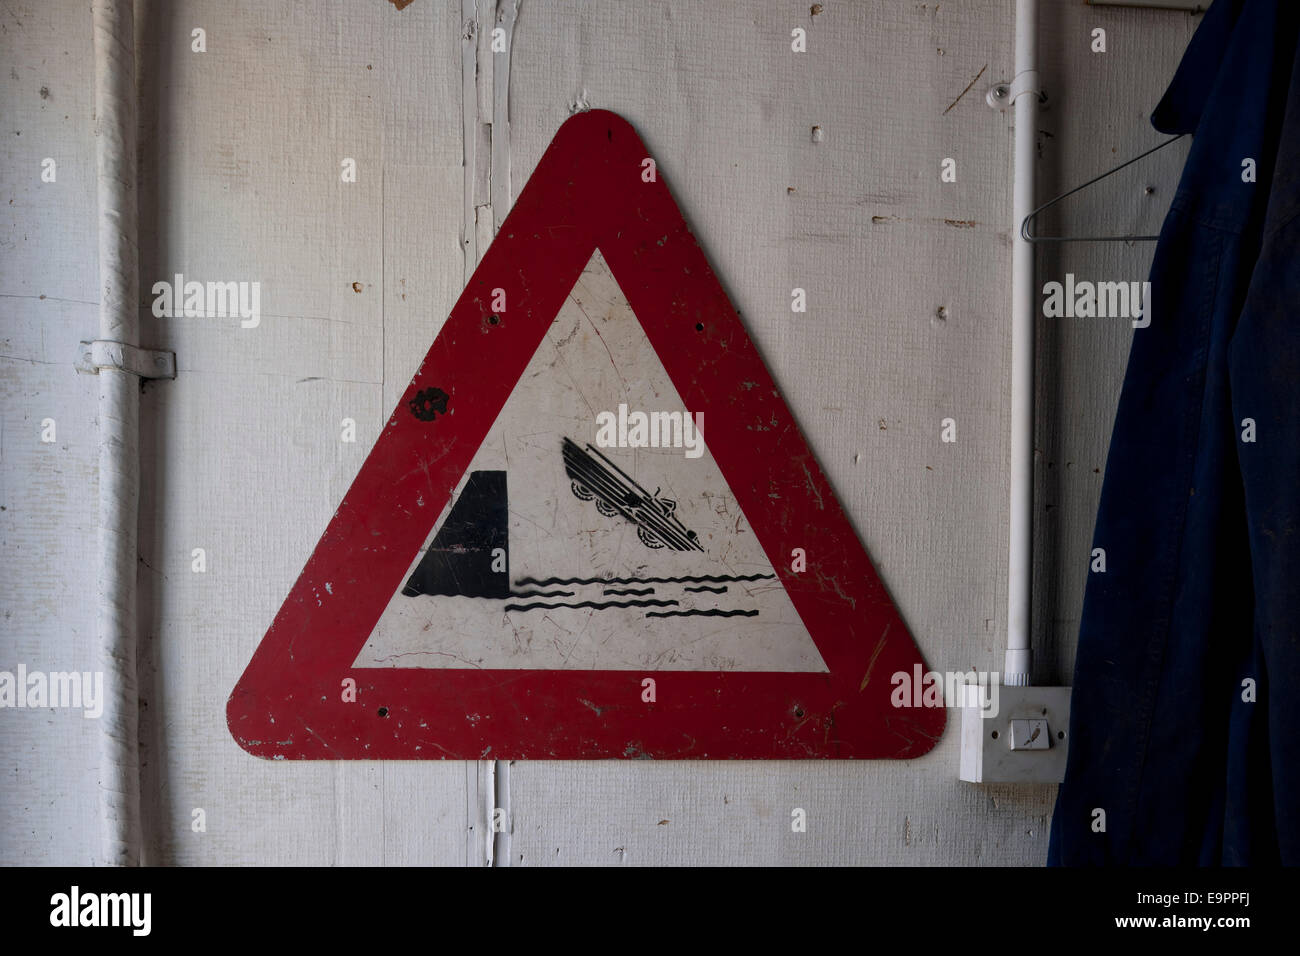 Danger road sign in workshop, Kingston upon Thames, England, UK Stock Photo